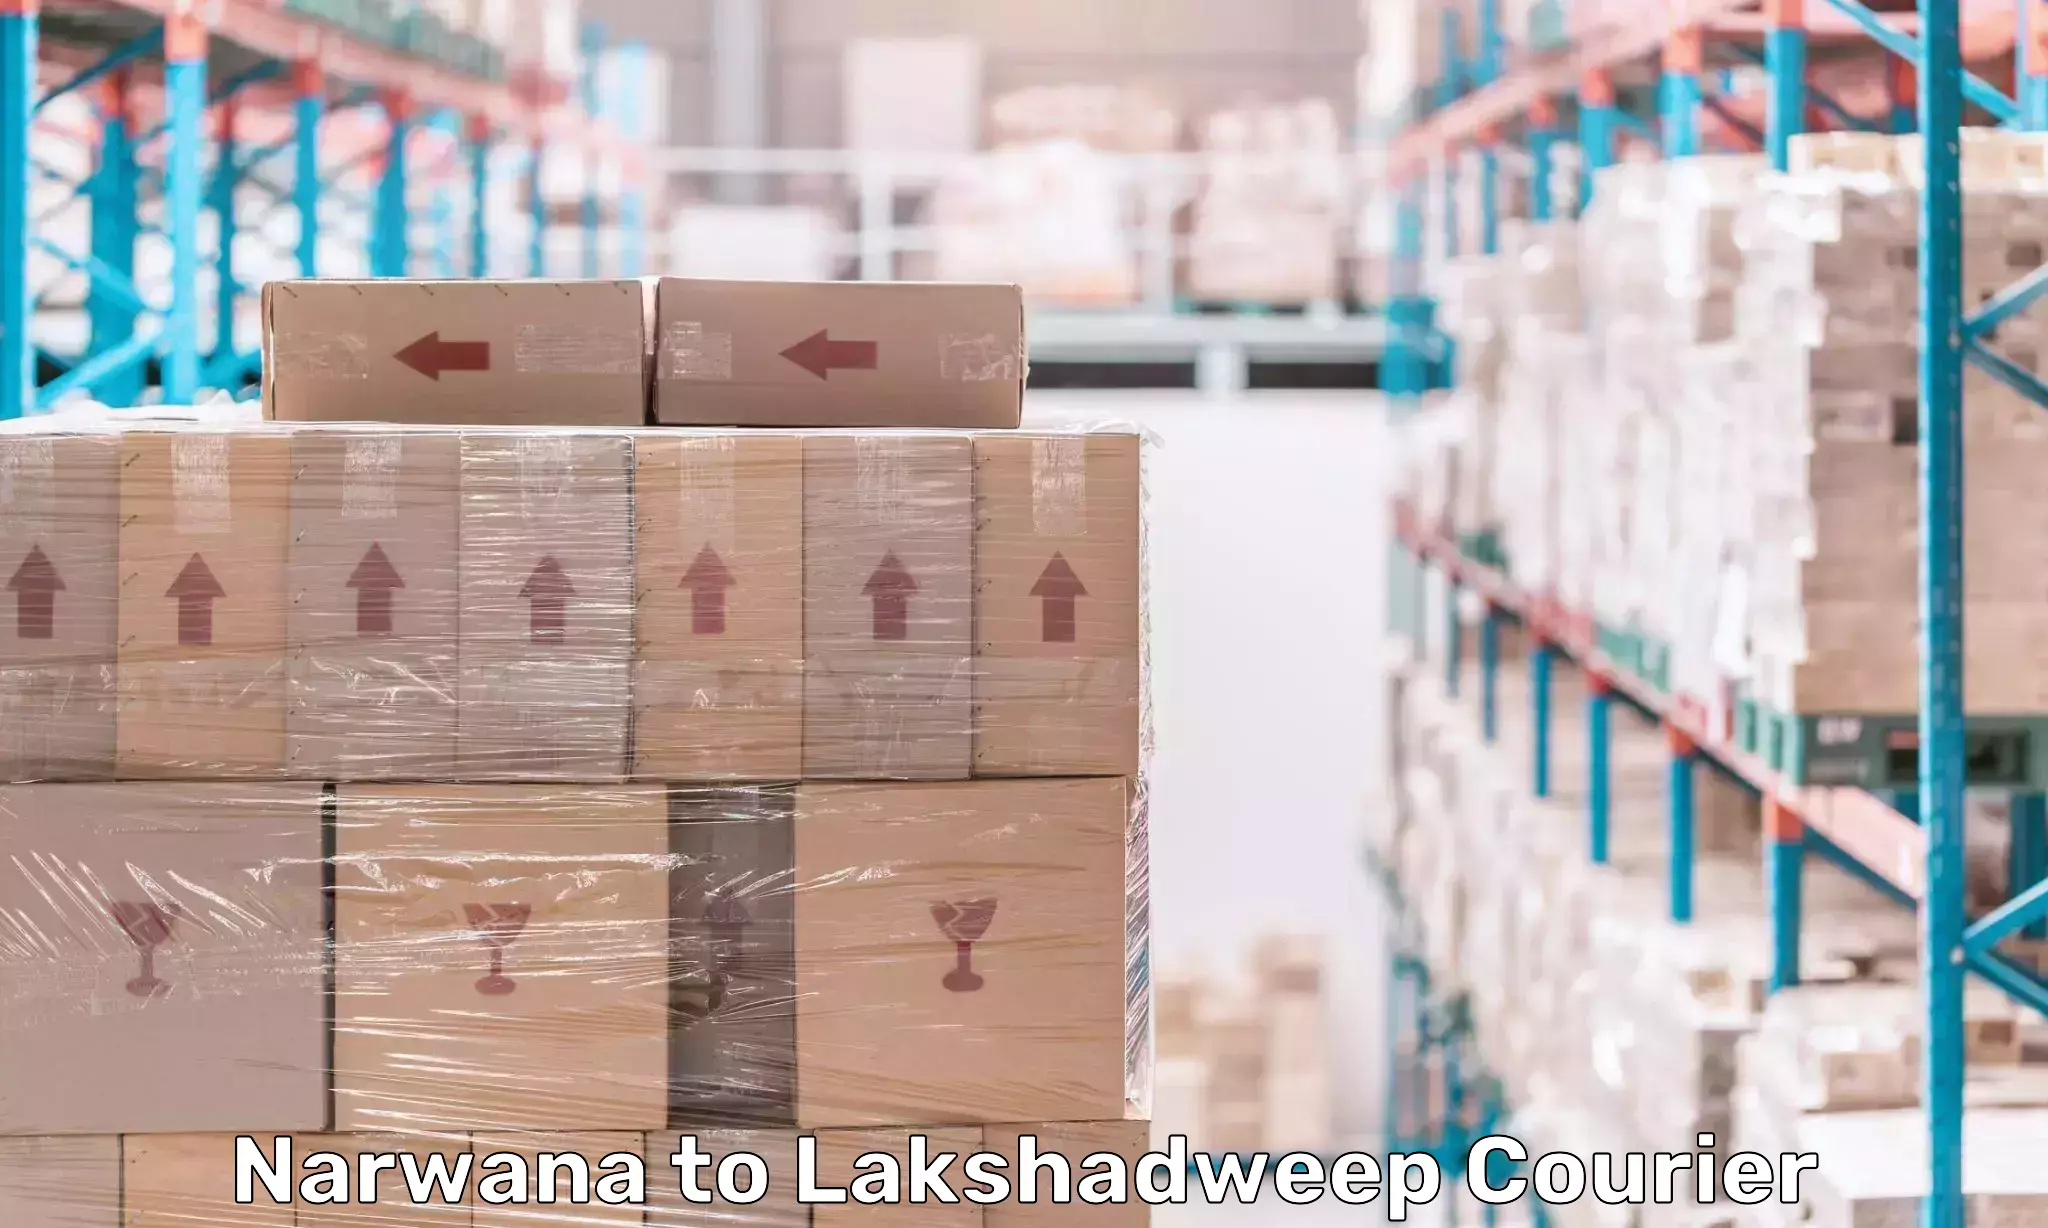 Cross-border shipping Narwana to Lakshadweep